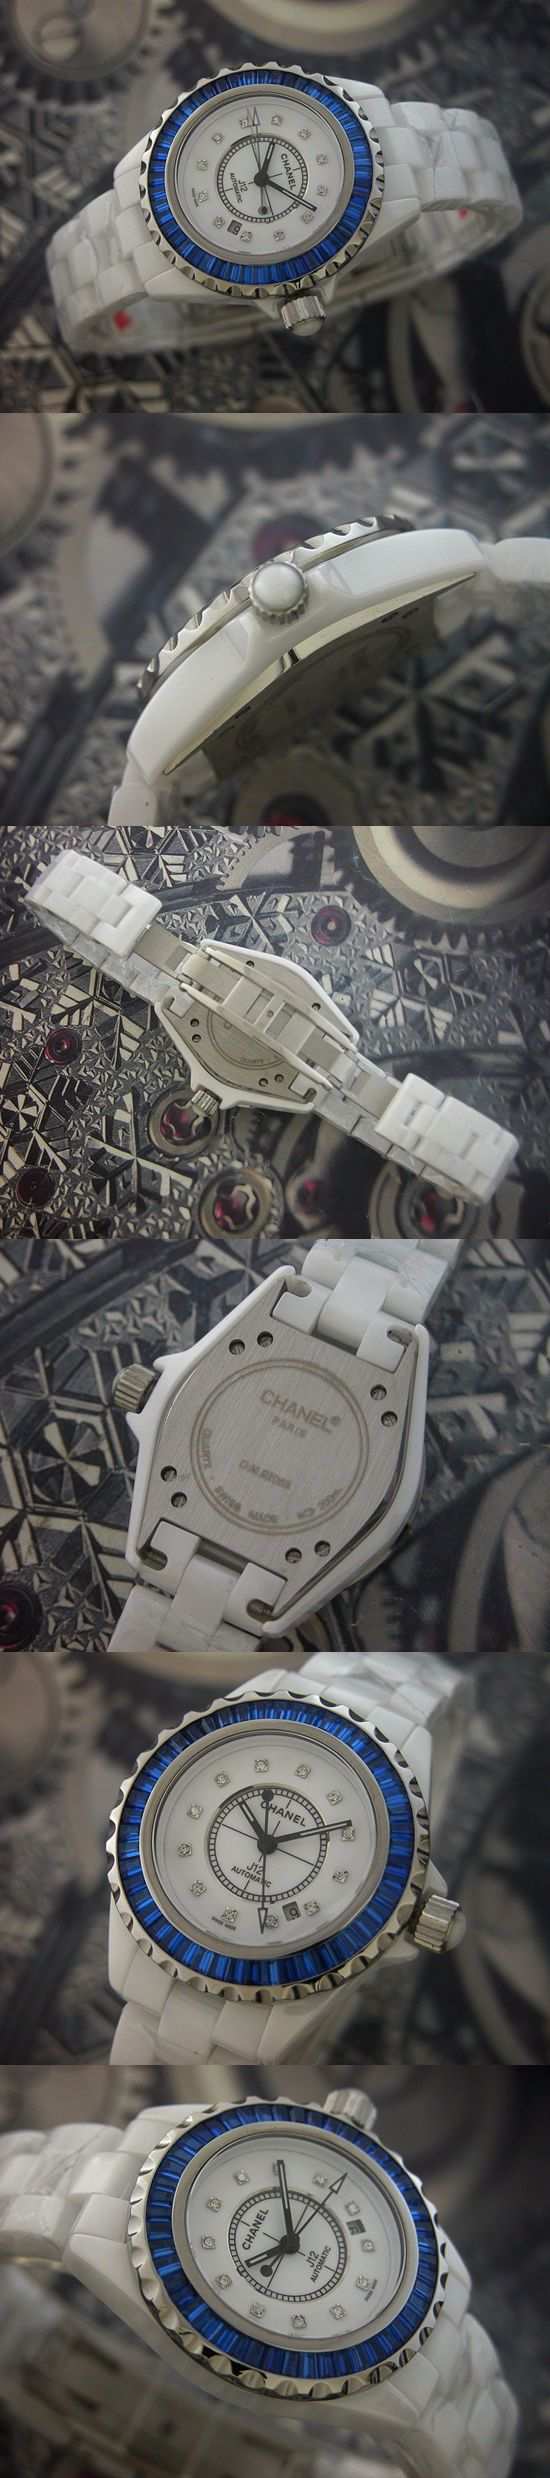 おしゃれなブランド時計がシャネル-CHANEL-H2020-al-J12-男性用を提供します.